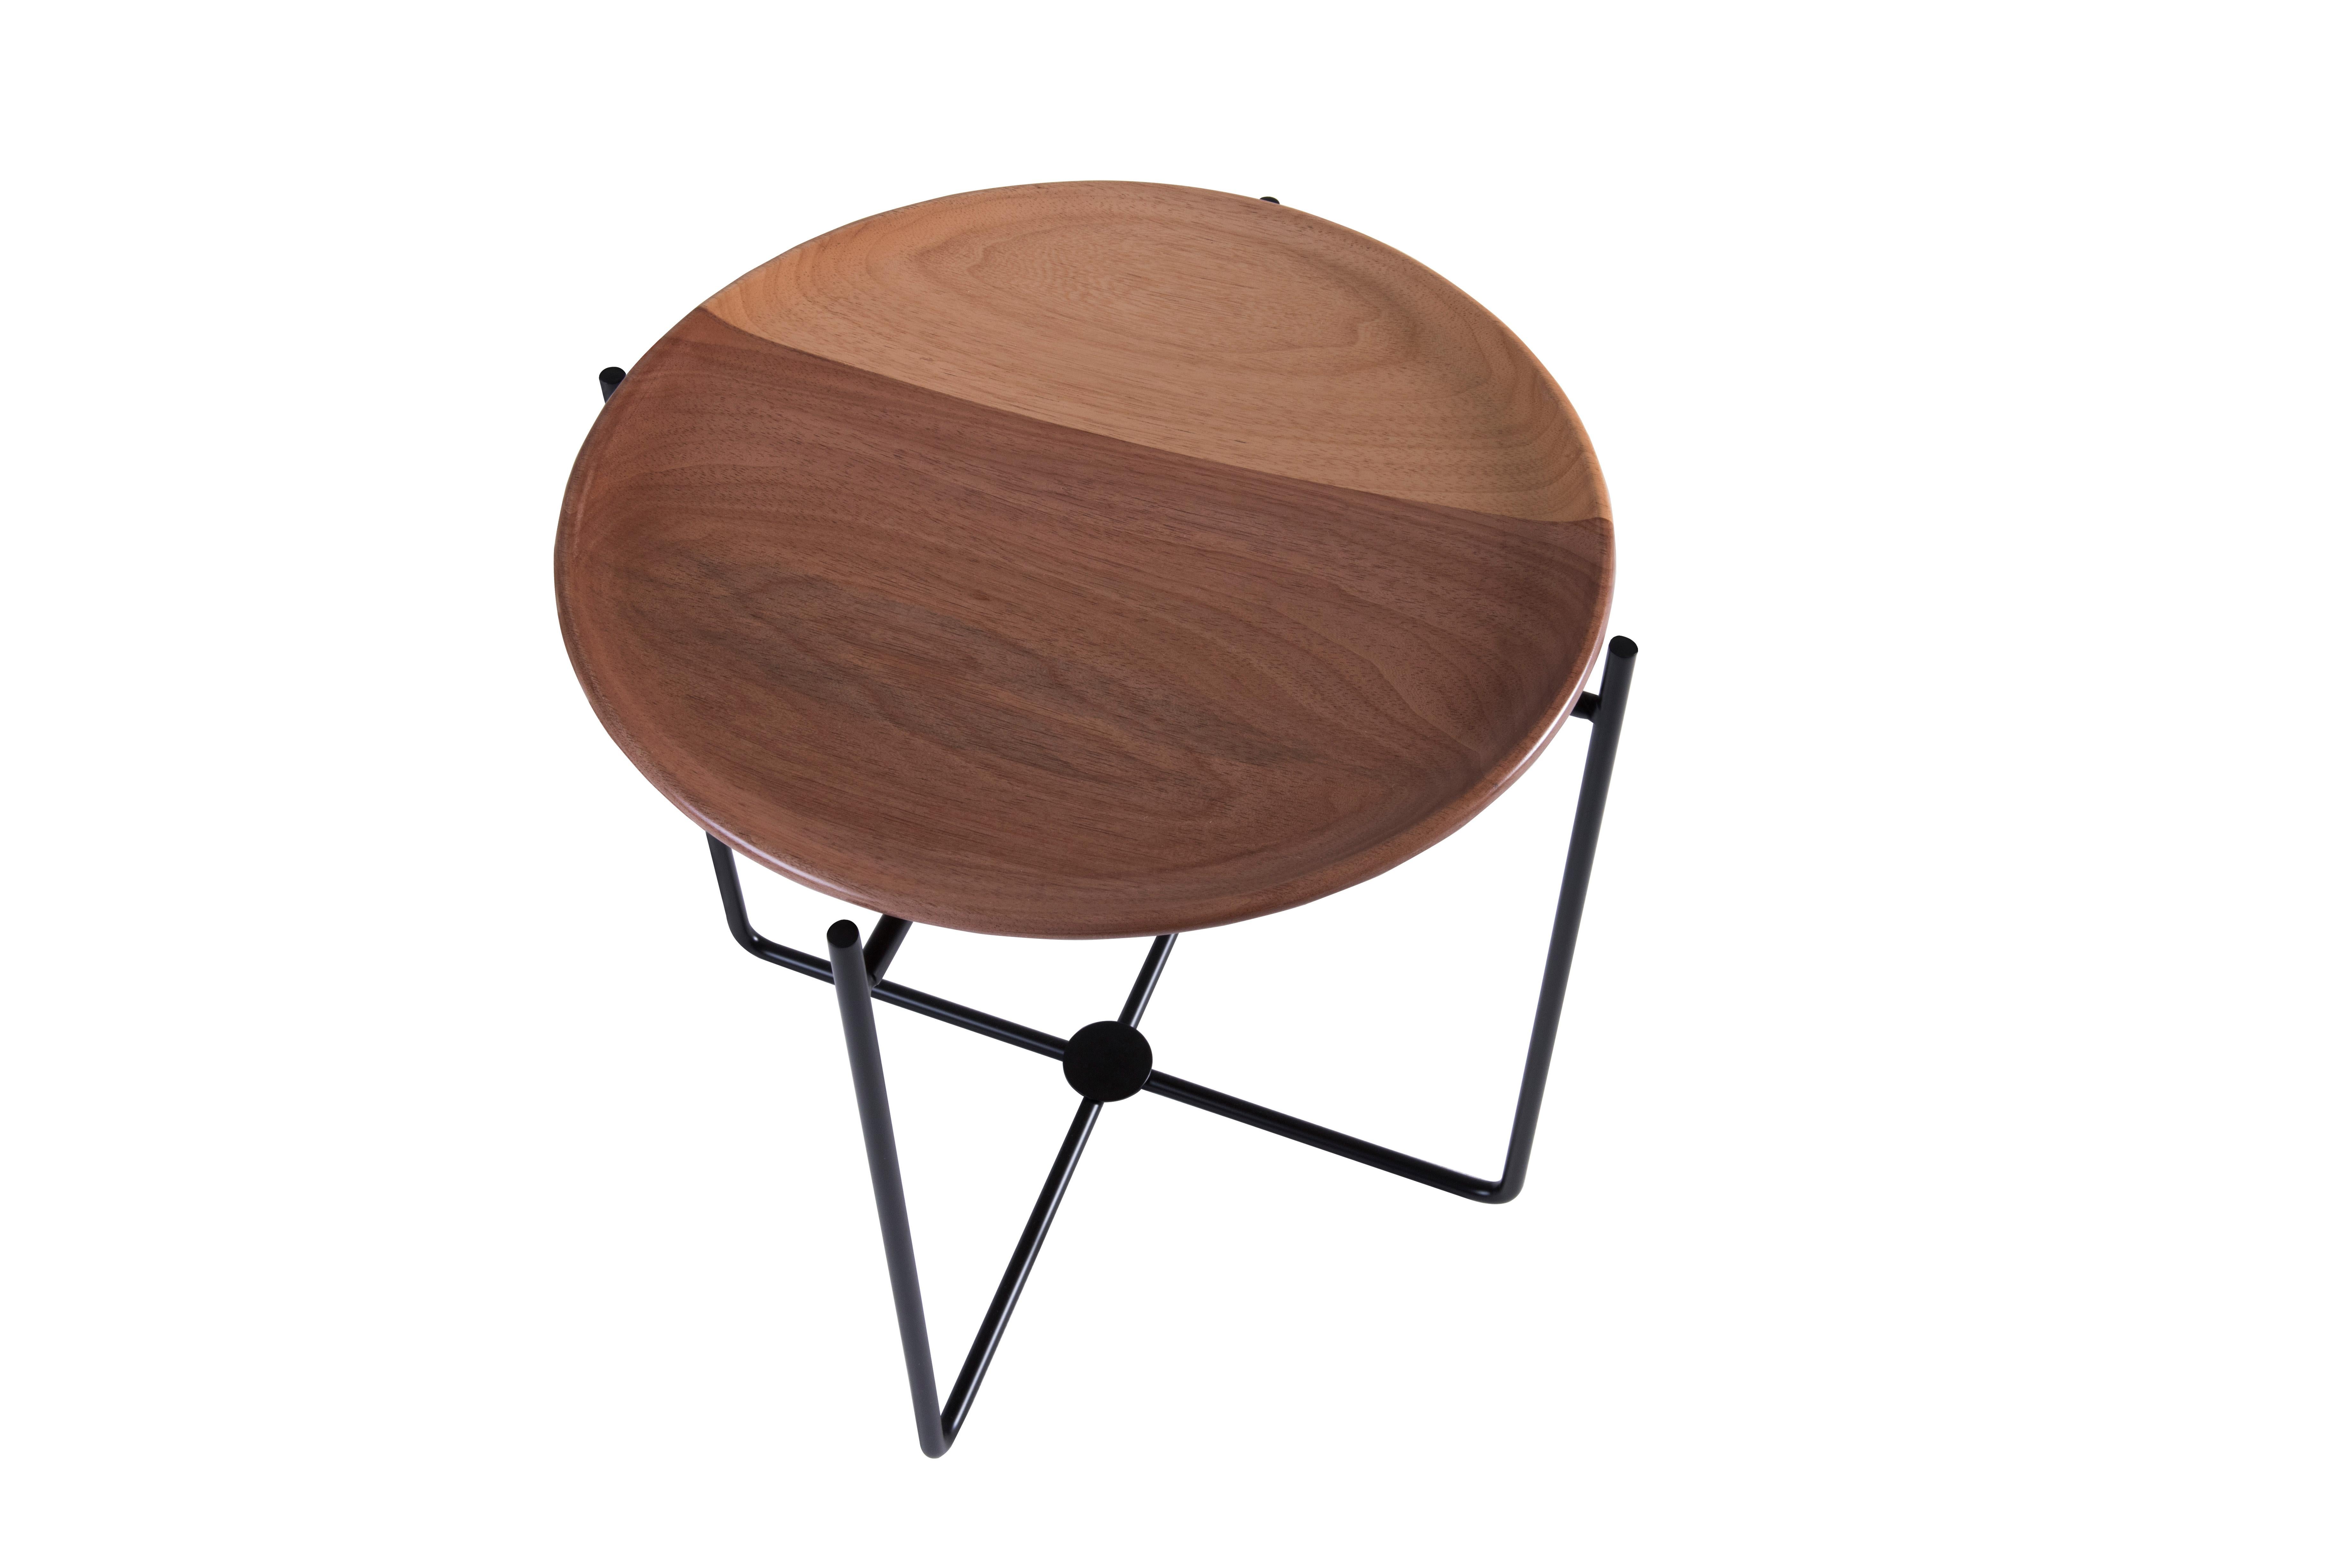 The Wood ist ein multifunktionales Stück, es kann als Beistelltisch oder als Sitzhocker verwendet werden.
Die Struktur besteht aus Karbonstahl, der mit Autolack in verschiedenen Farben wie Schwarz, Gold, Rosé und Grau lackiert ist (matte